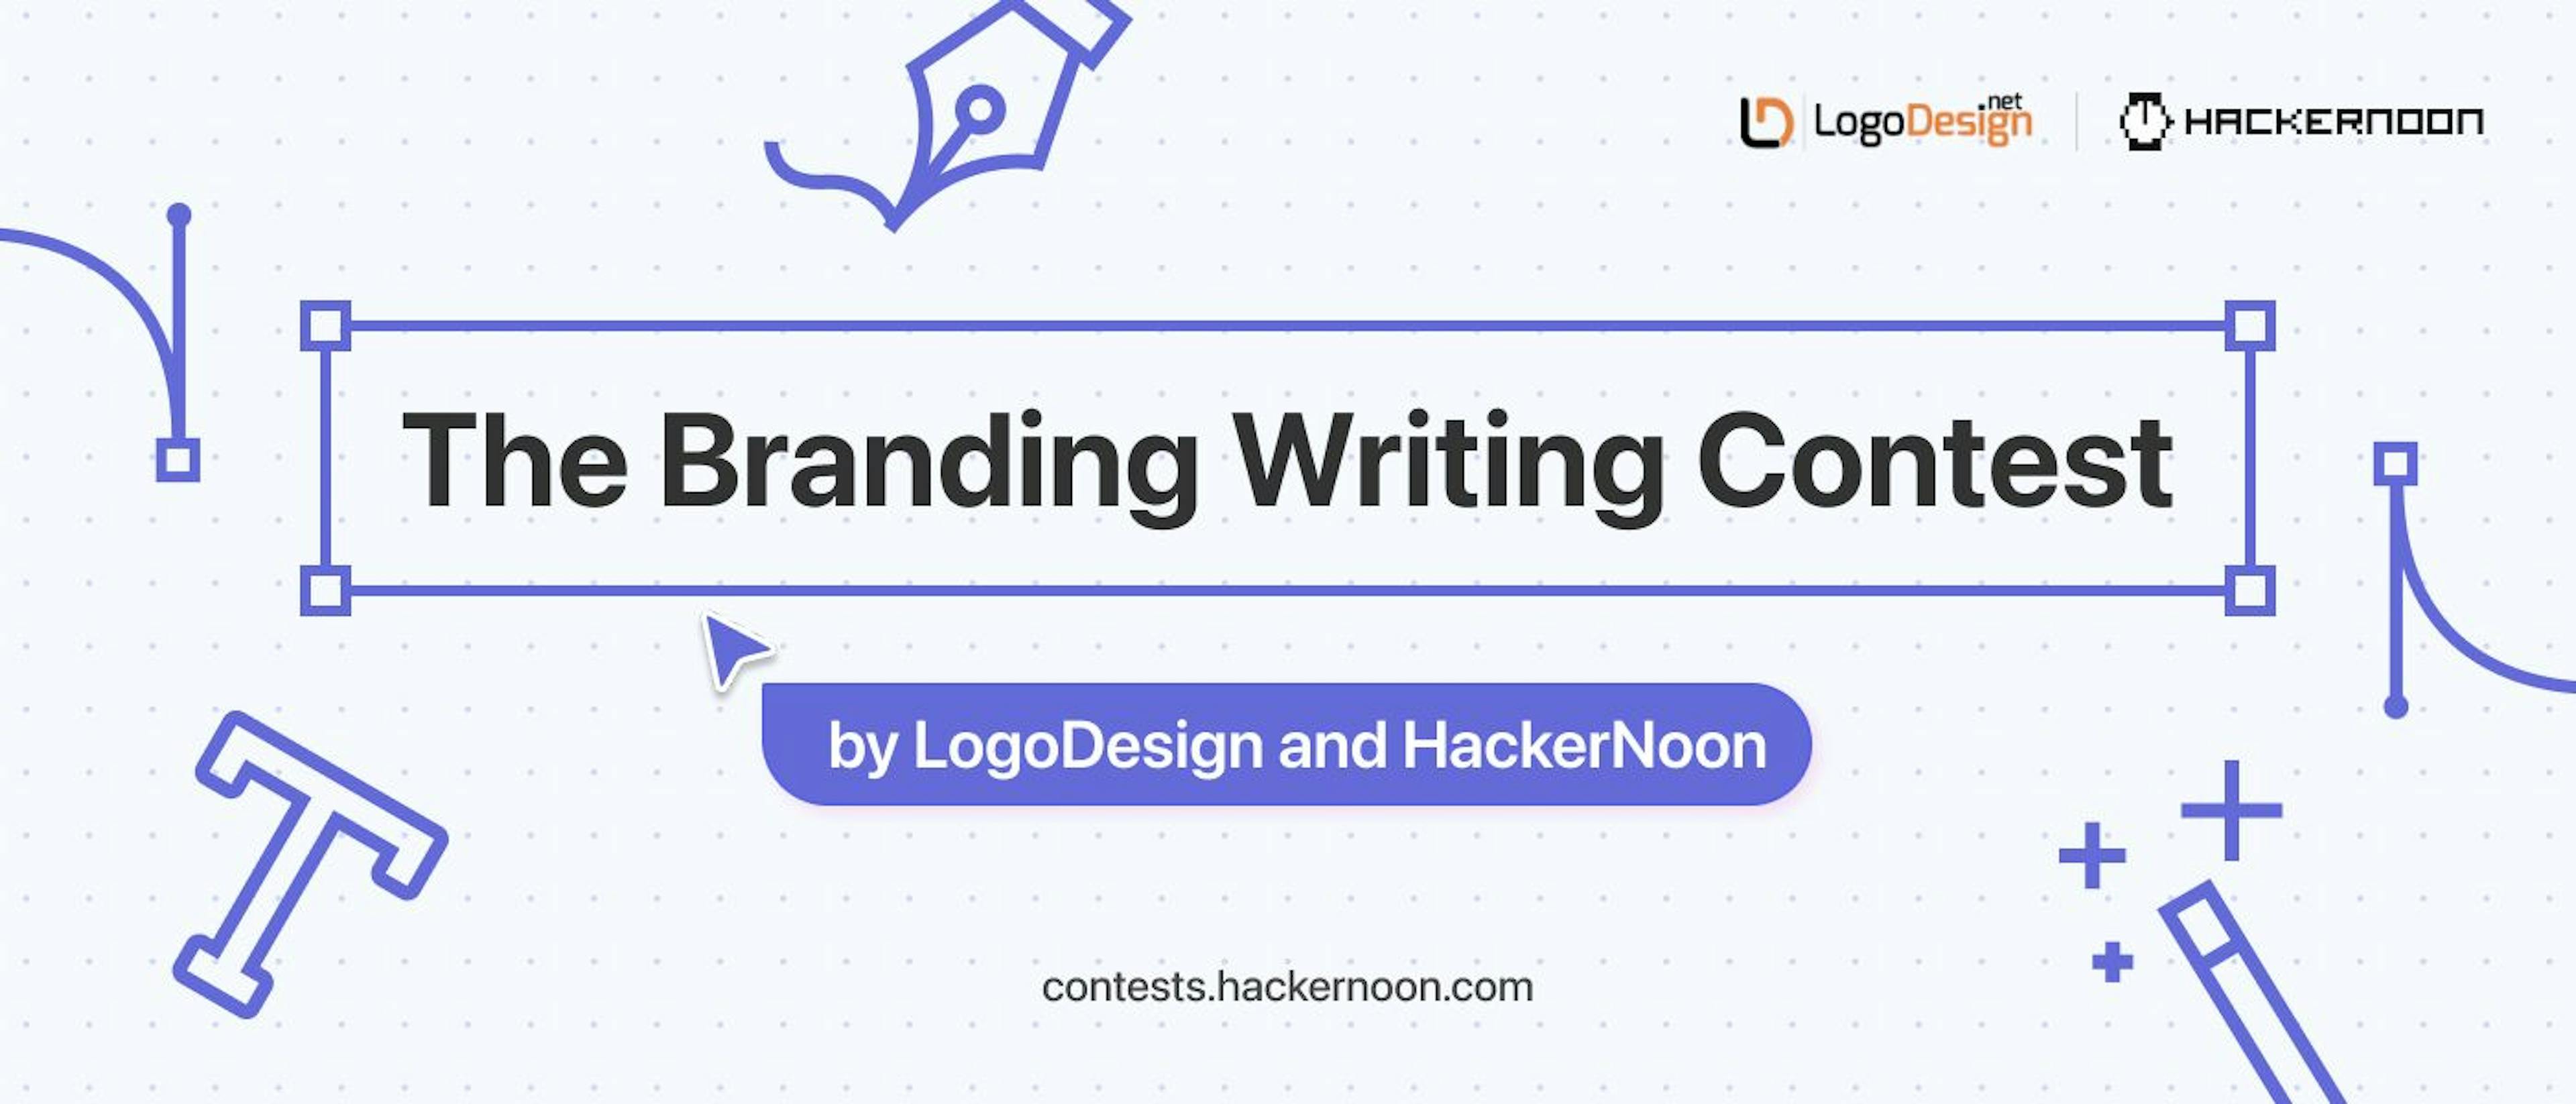 featured image - LogoDesign と HackerNoon によるブランディング ライティング コンテスト